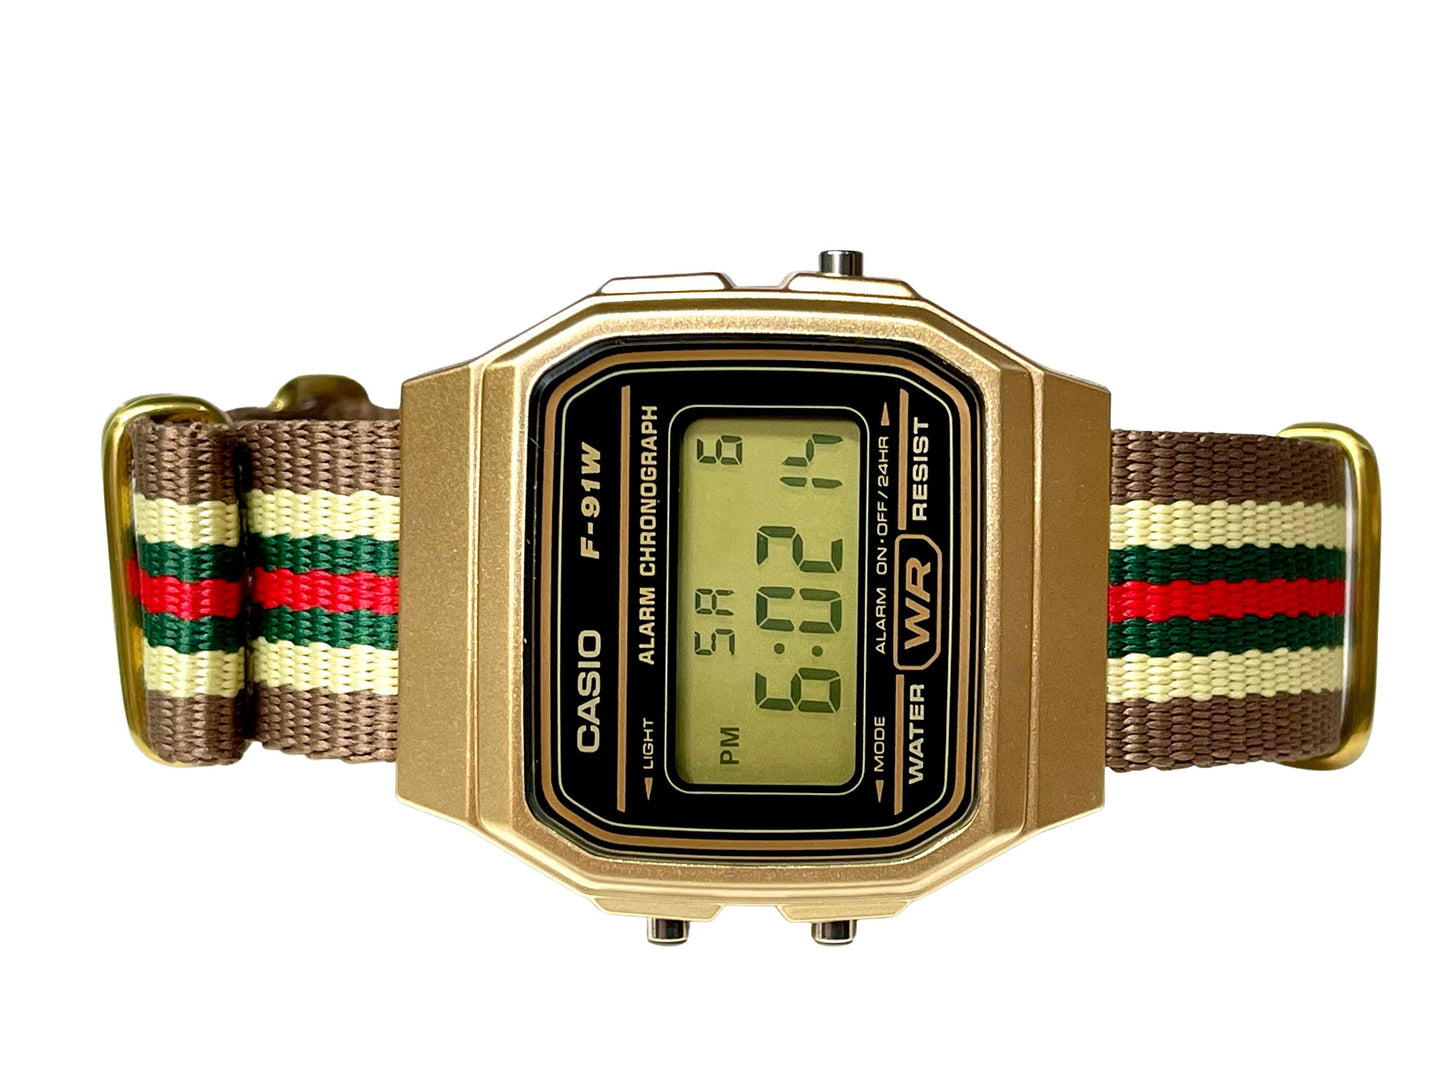 Custom Gold Casio Watch on Beige/Green/Red Strap